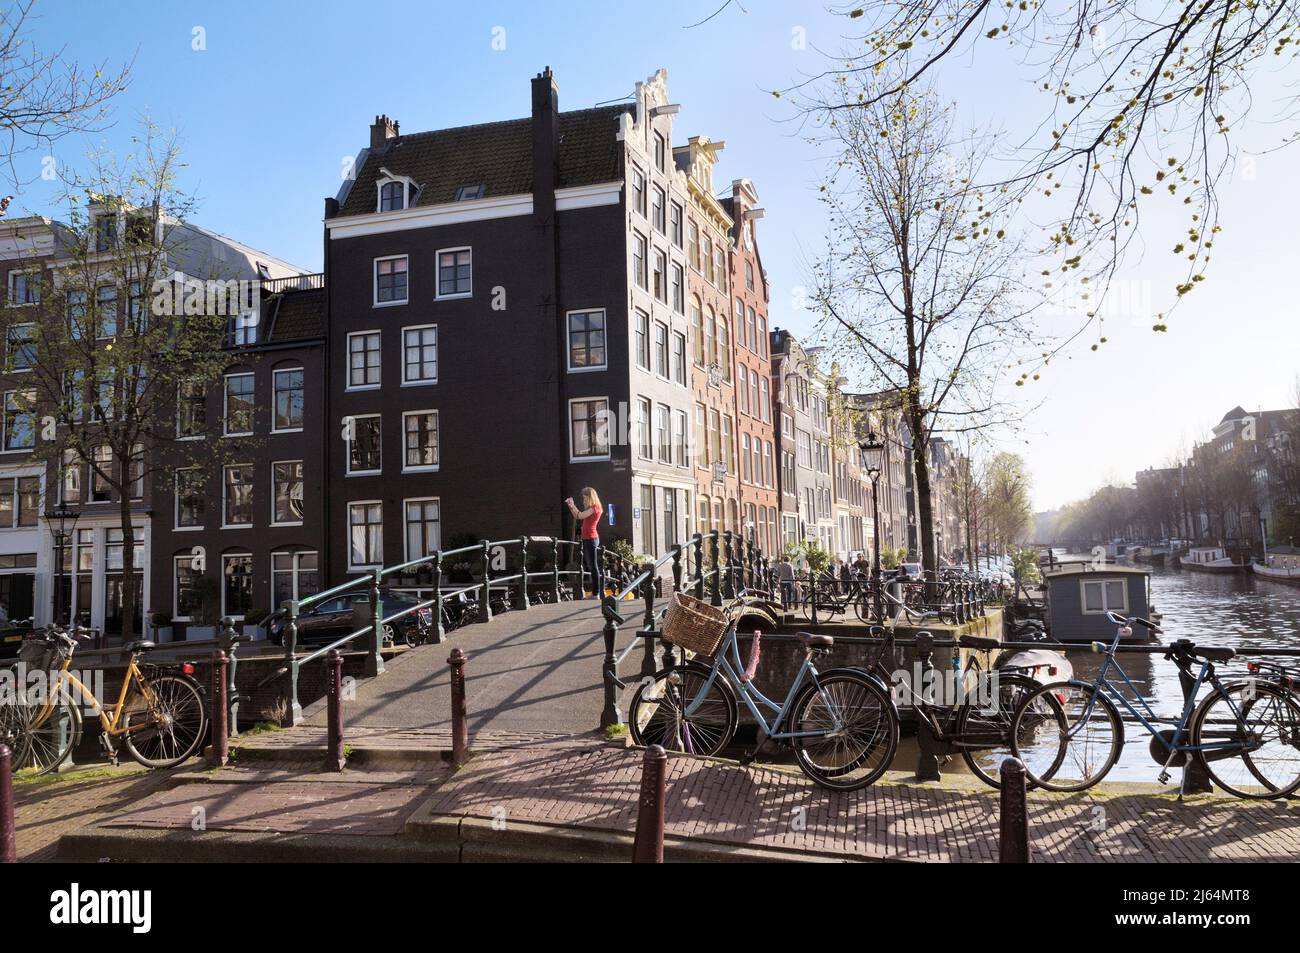 Jeune femme prenant une photo sur un pont à l'angle de Brouwersgracht et Herengracht canal, Jordaan, Amsterdam, Hollande-du-Nord, pays-Bas, Europe Banque D'Images